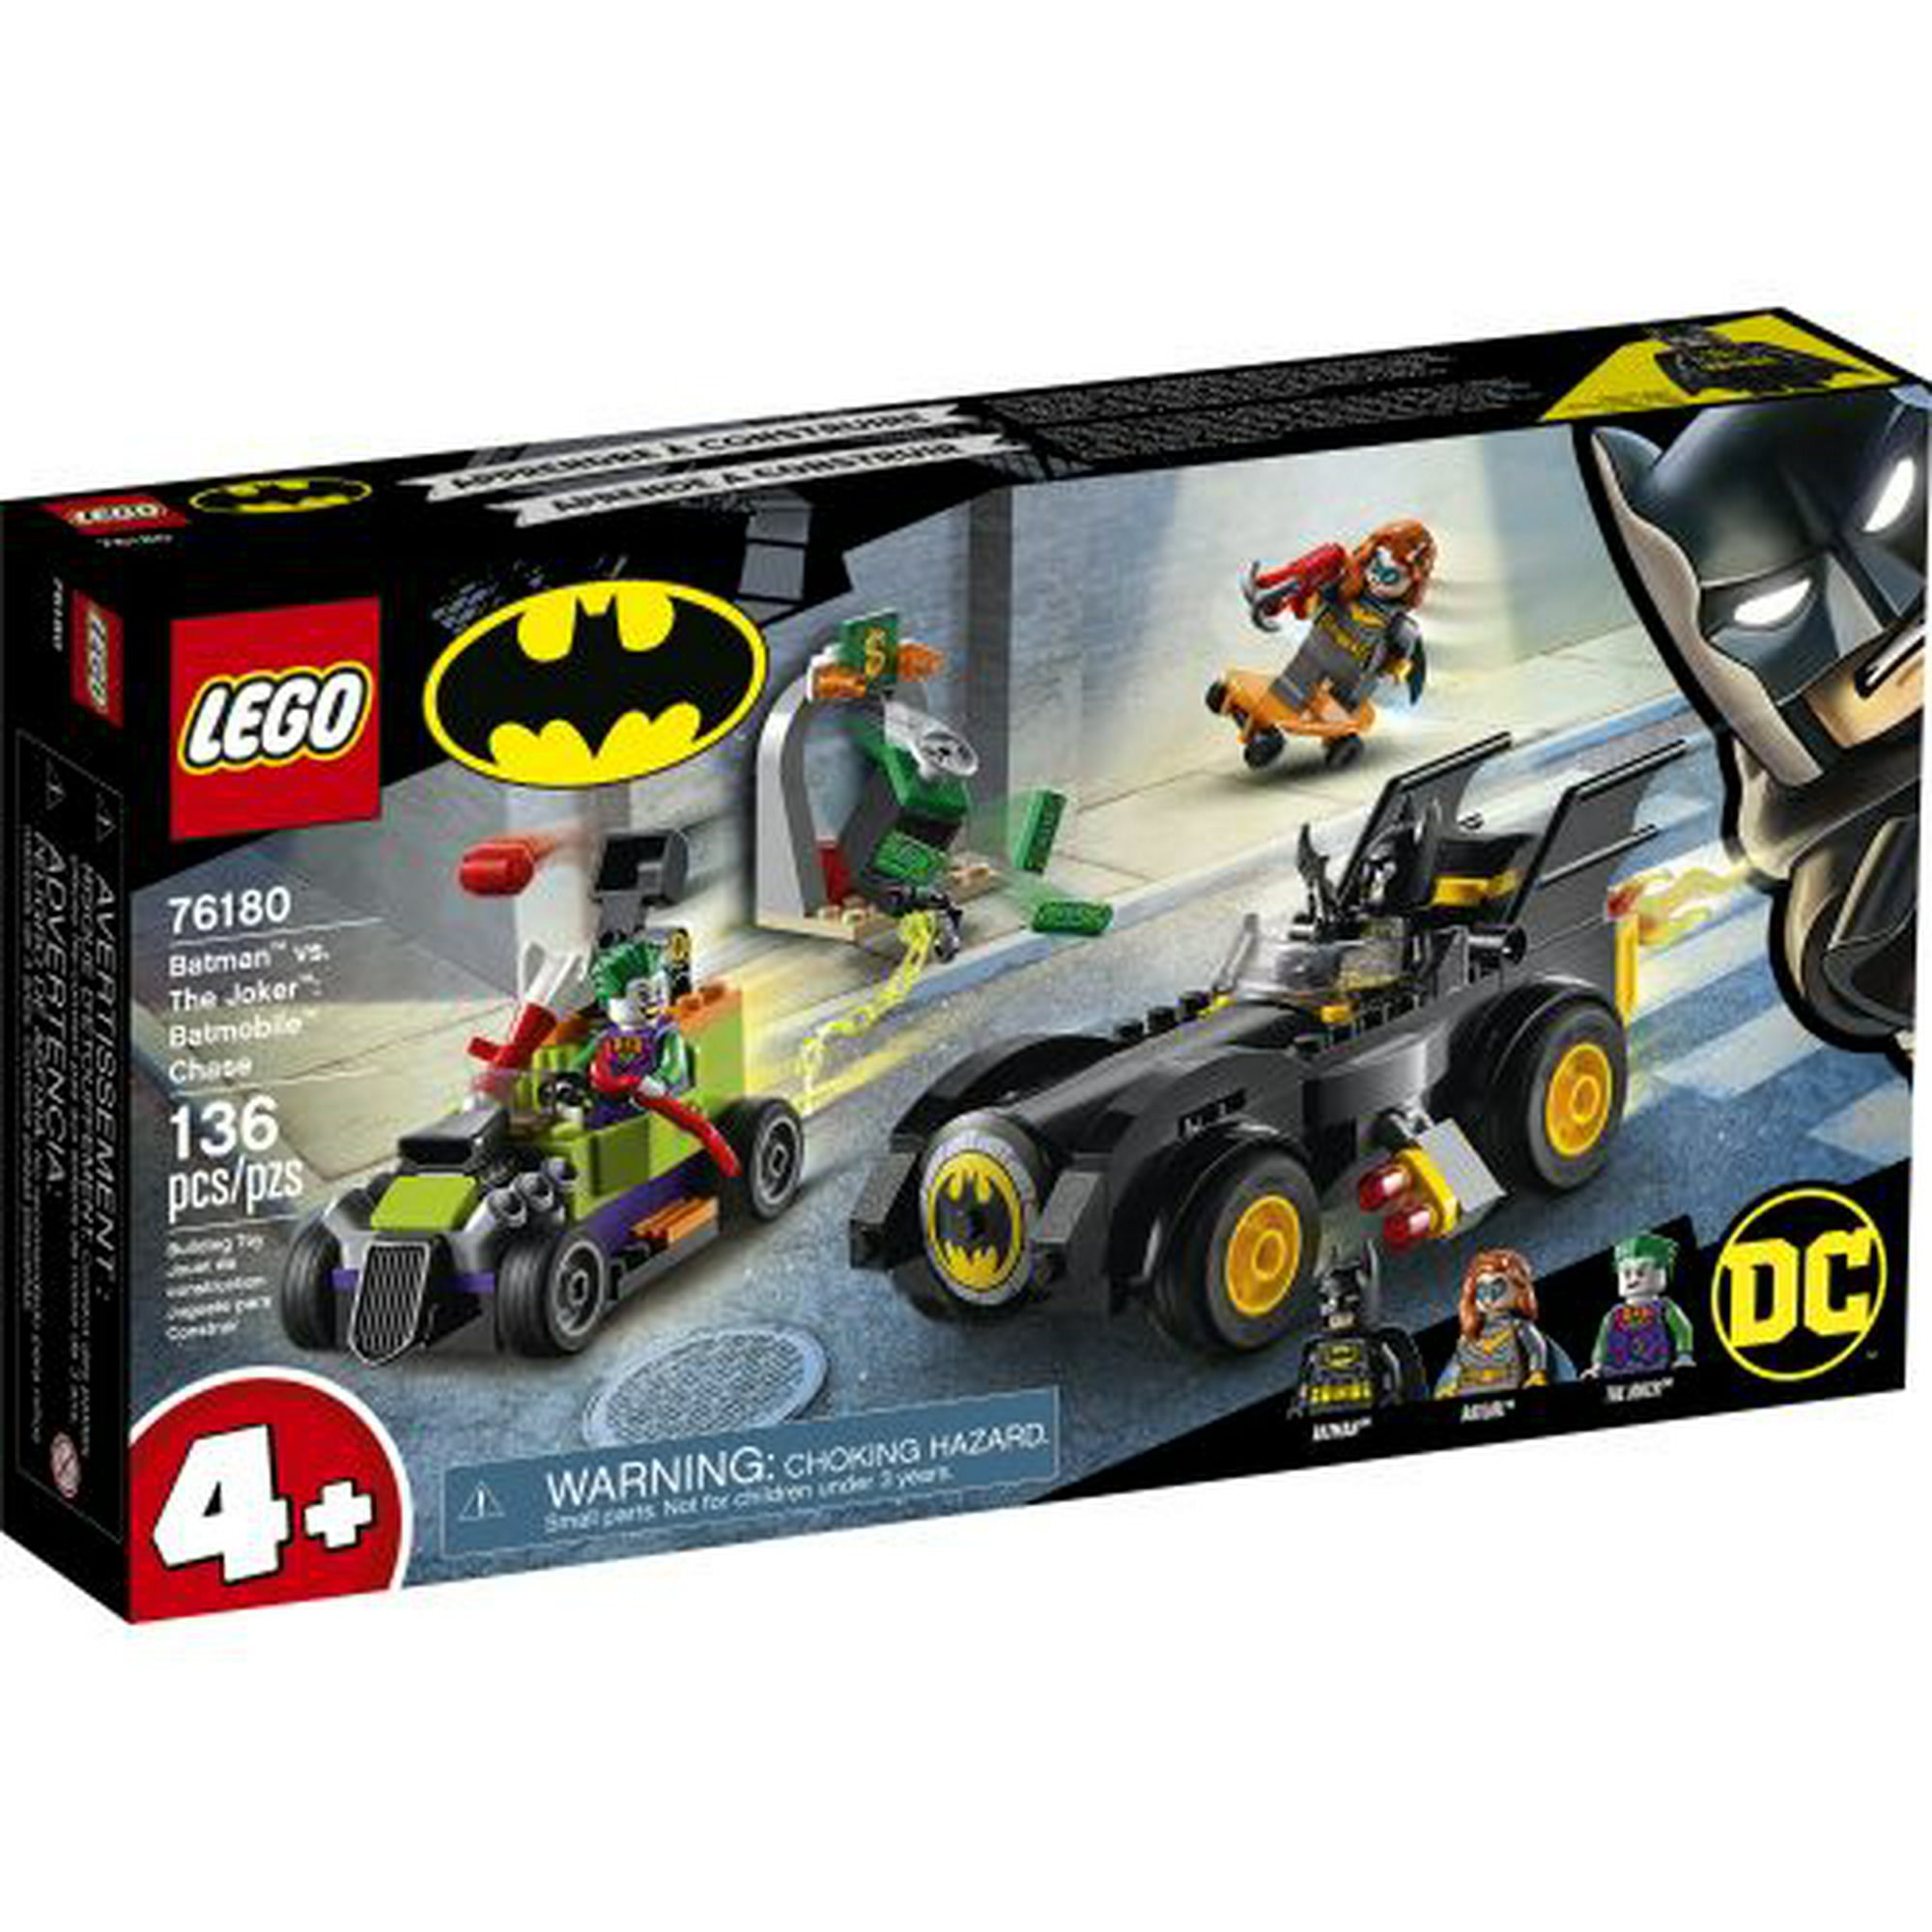 Lego Batman : Batman vs. The Joker / Batmobile Chase 76180 | Walmart Canada